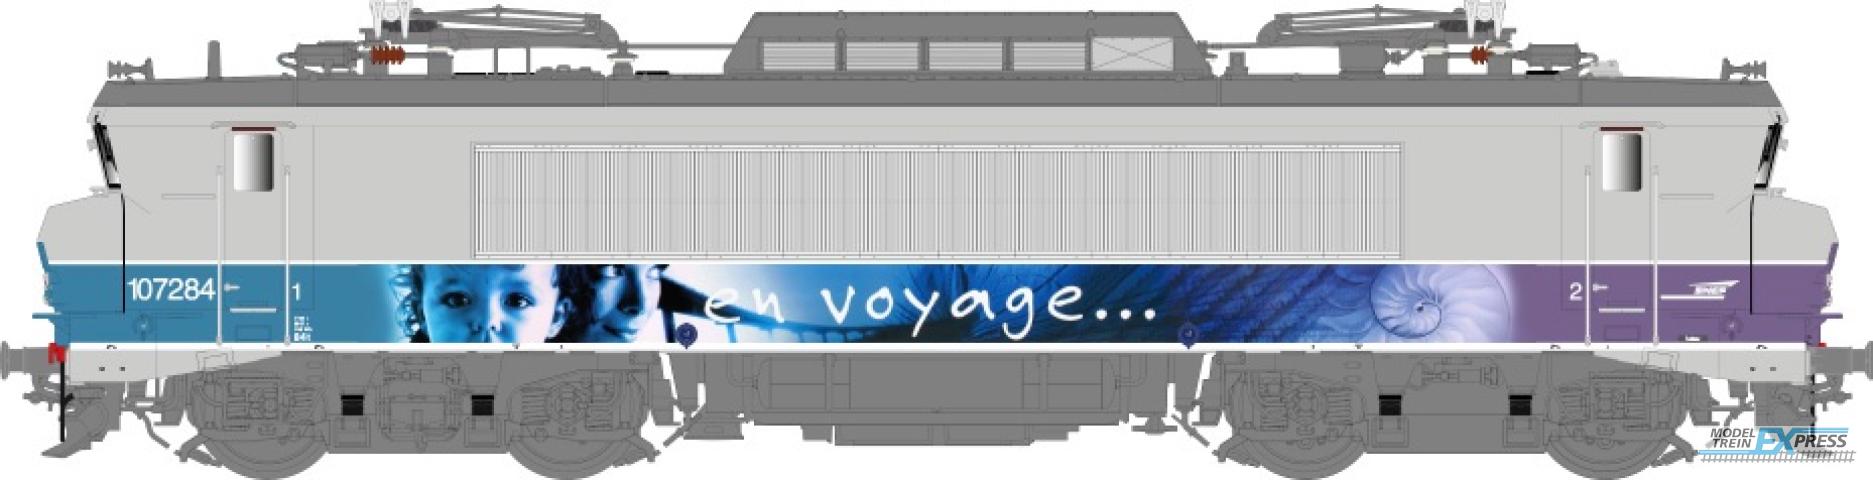 LS Models 10705S BB 7200, grijs/paars, En Voyage, pet logo, front nummer, grote cabine  /  Ep. V  /  SNCF  /  HO  /  AC SOUND  /  1 P.